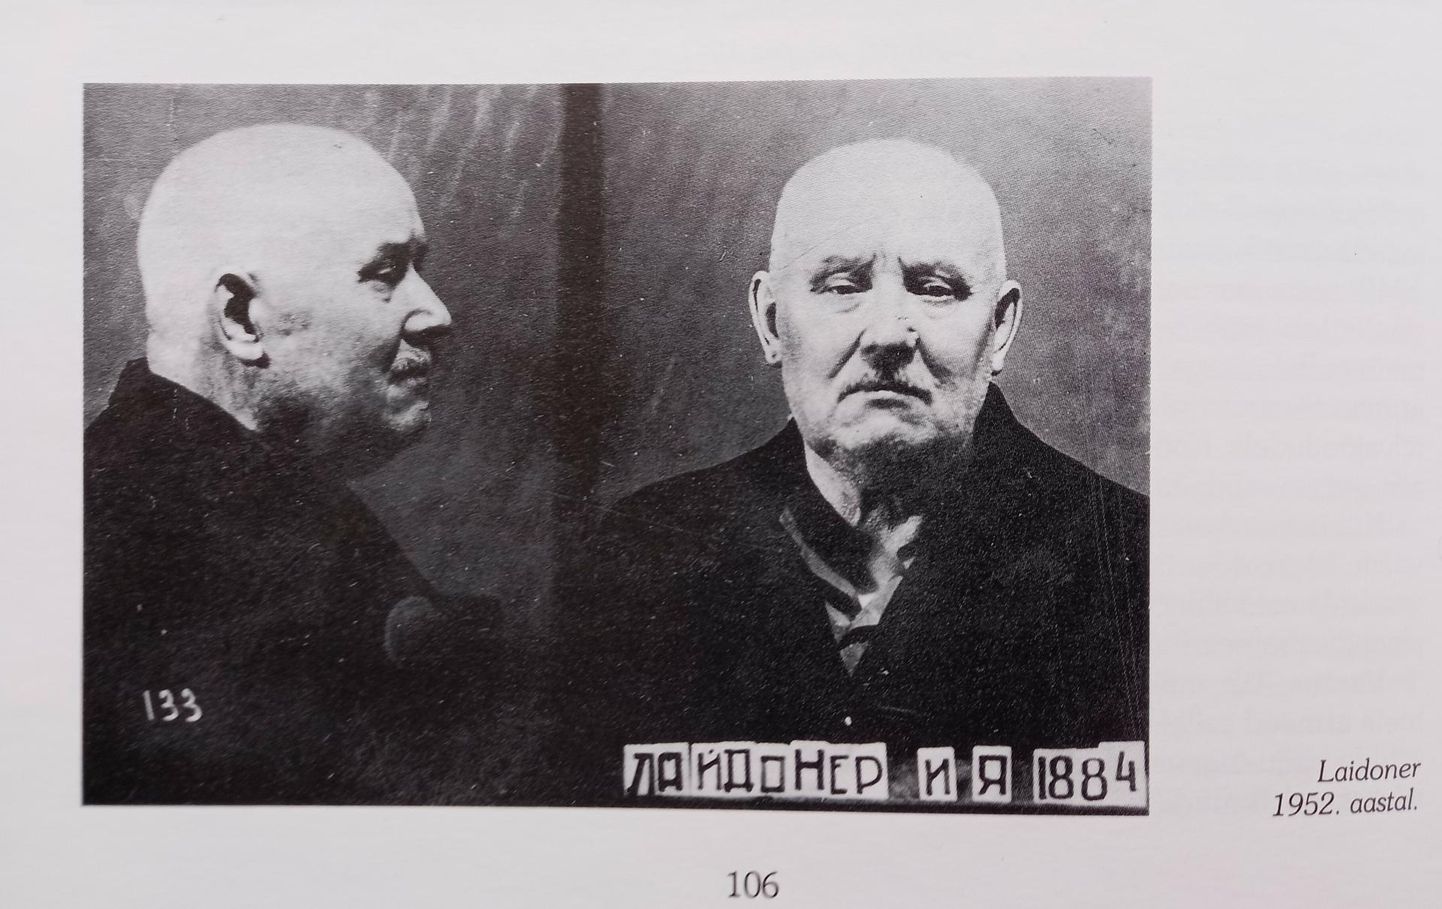 Vladimir Pooli raamatust leiab 1952. aasta foto Johan Laidonerist, kes veeti Moskva Butõõrka vanglasse. Kuue-seitsmetunnised ülekuulamised ja piinamine murdsid lõpuks kindrali tahte ning ta võttis omaks Nõukogude Liiduga sõlmitud vastastikuse abistamise lepingu rikkumise. Karistuseks määrata talle ja abikaasa Mariale 25 aastat vanglat. Puruhaige Johan Laidoner suri aasta hiljem.